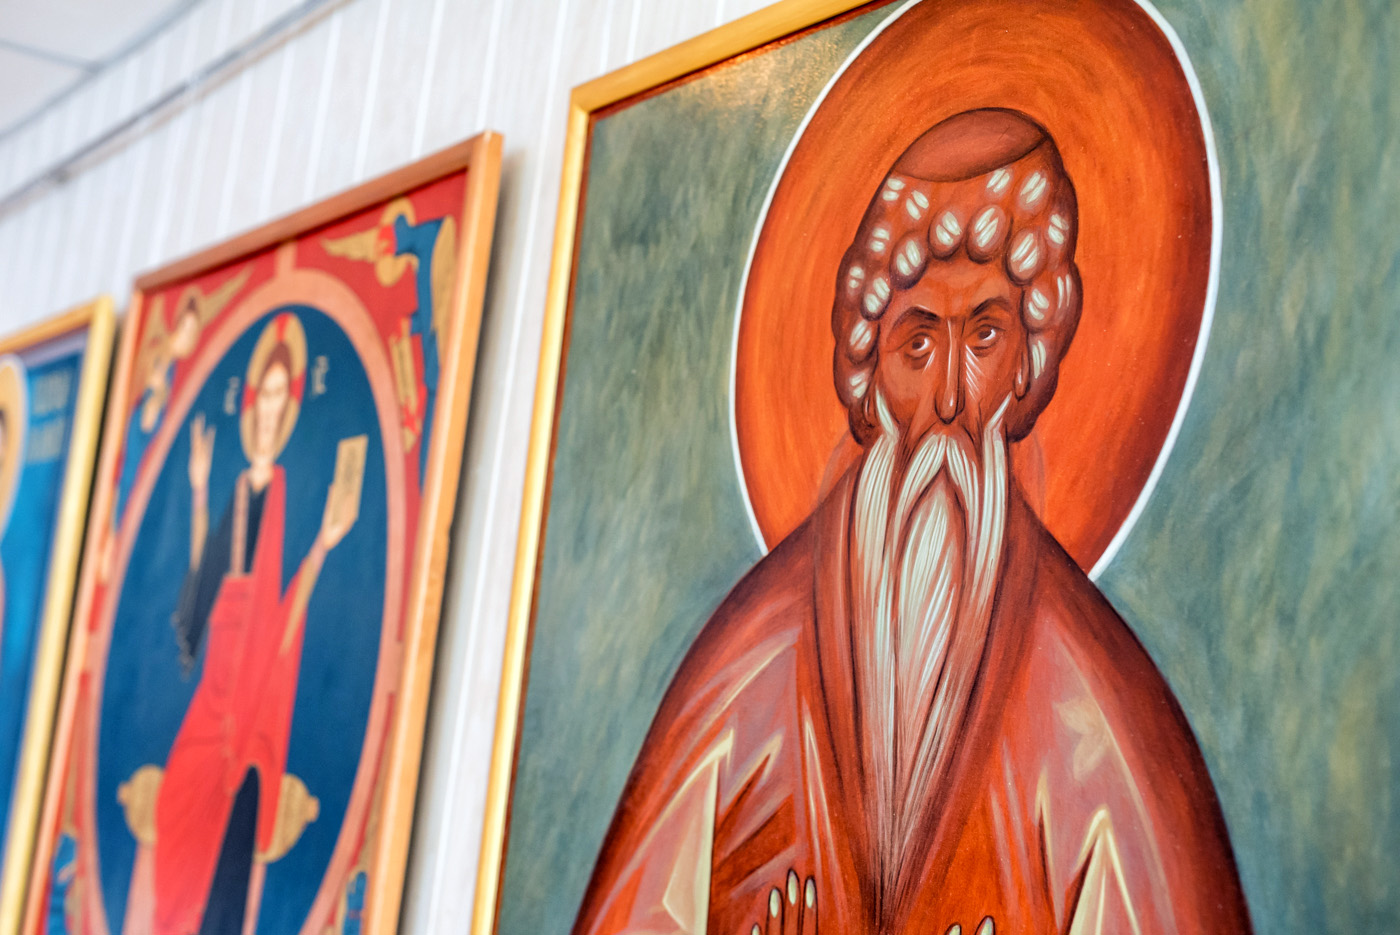 Відбулося відкриття виставки сакрального (священного) християнського живопису в культурно-мистецькому центрі на Лівому березі